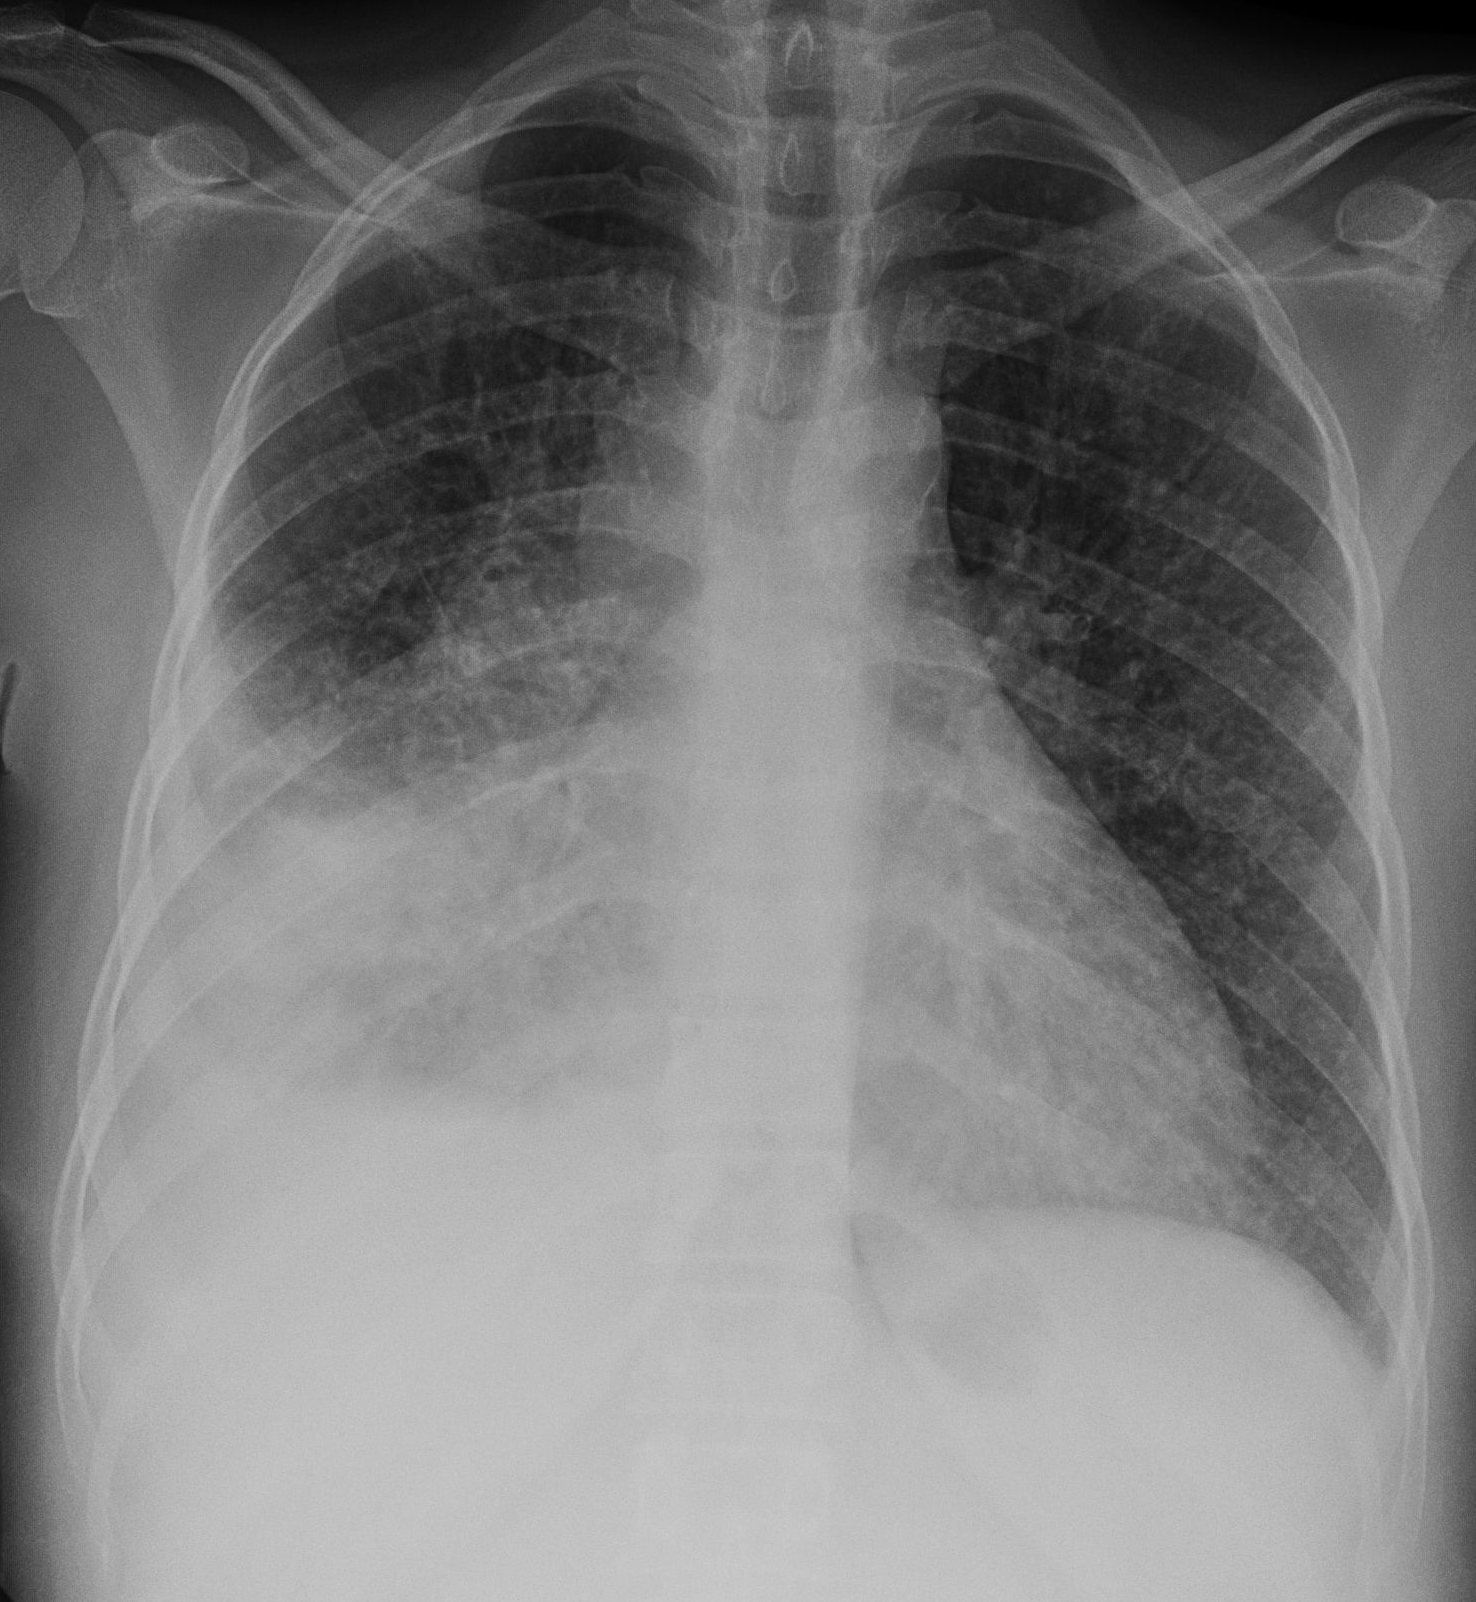 File:Miliary Tuberculosis.jpg